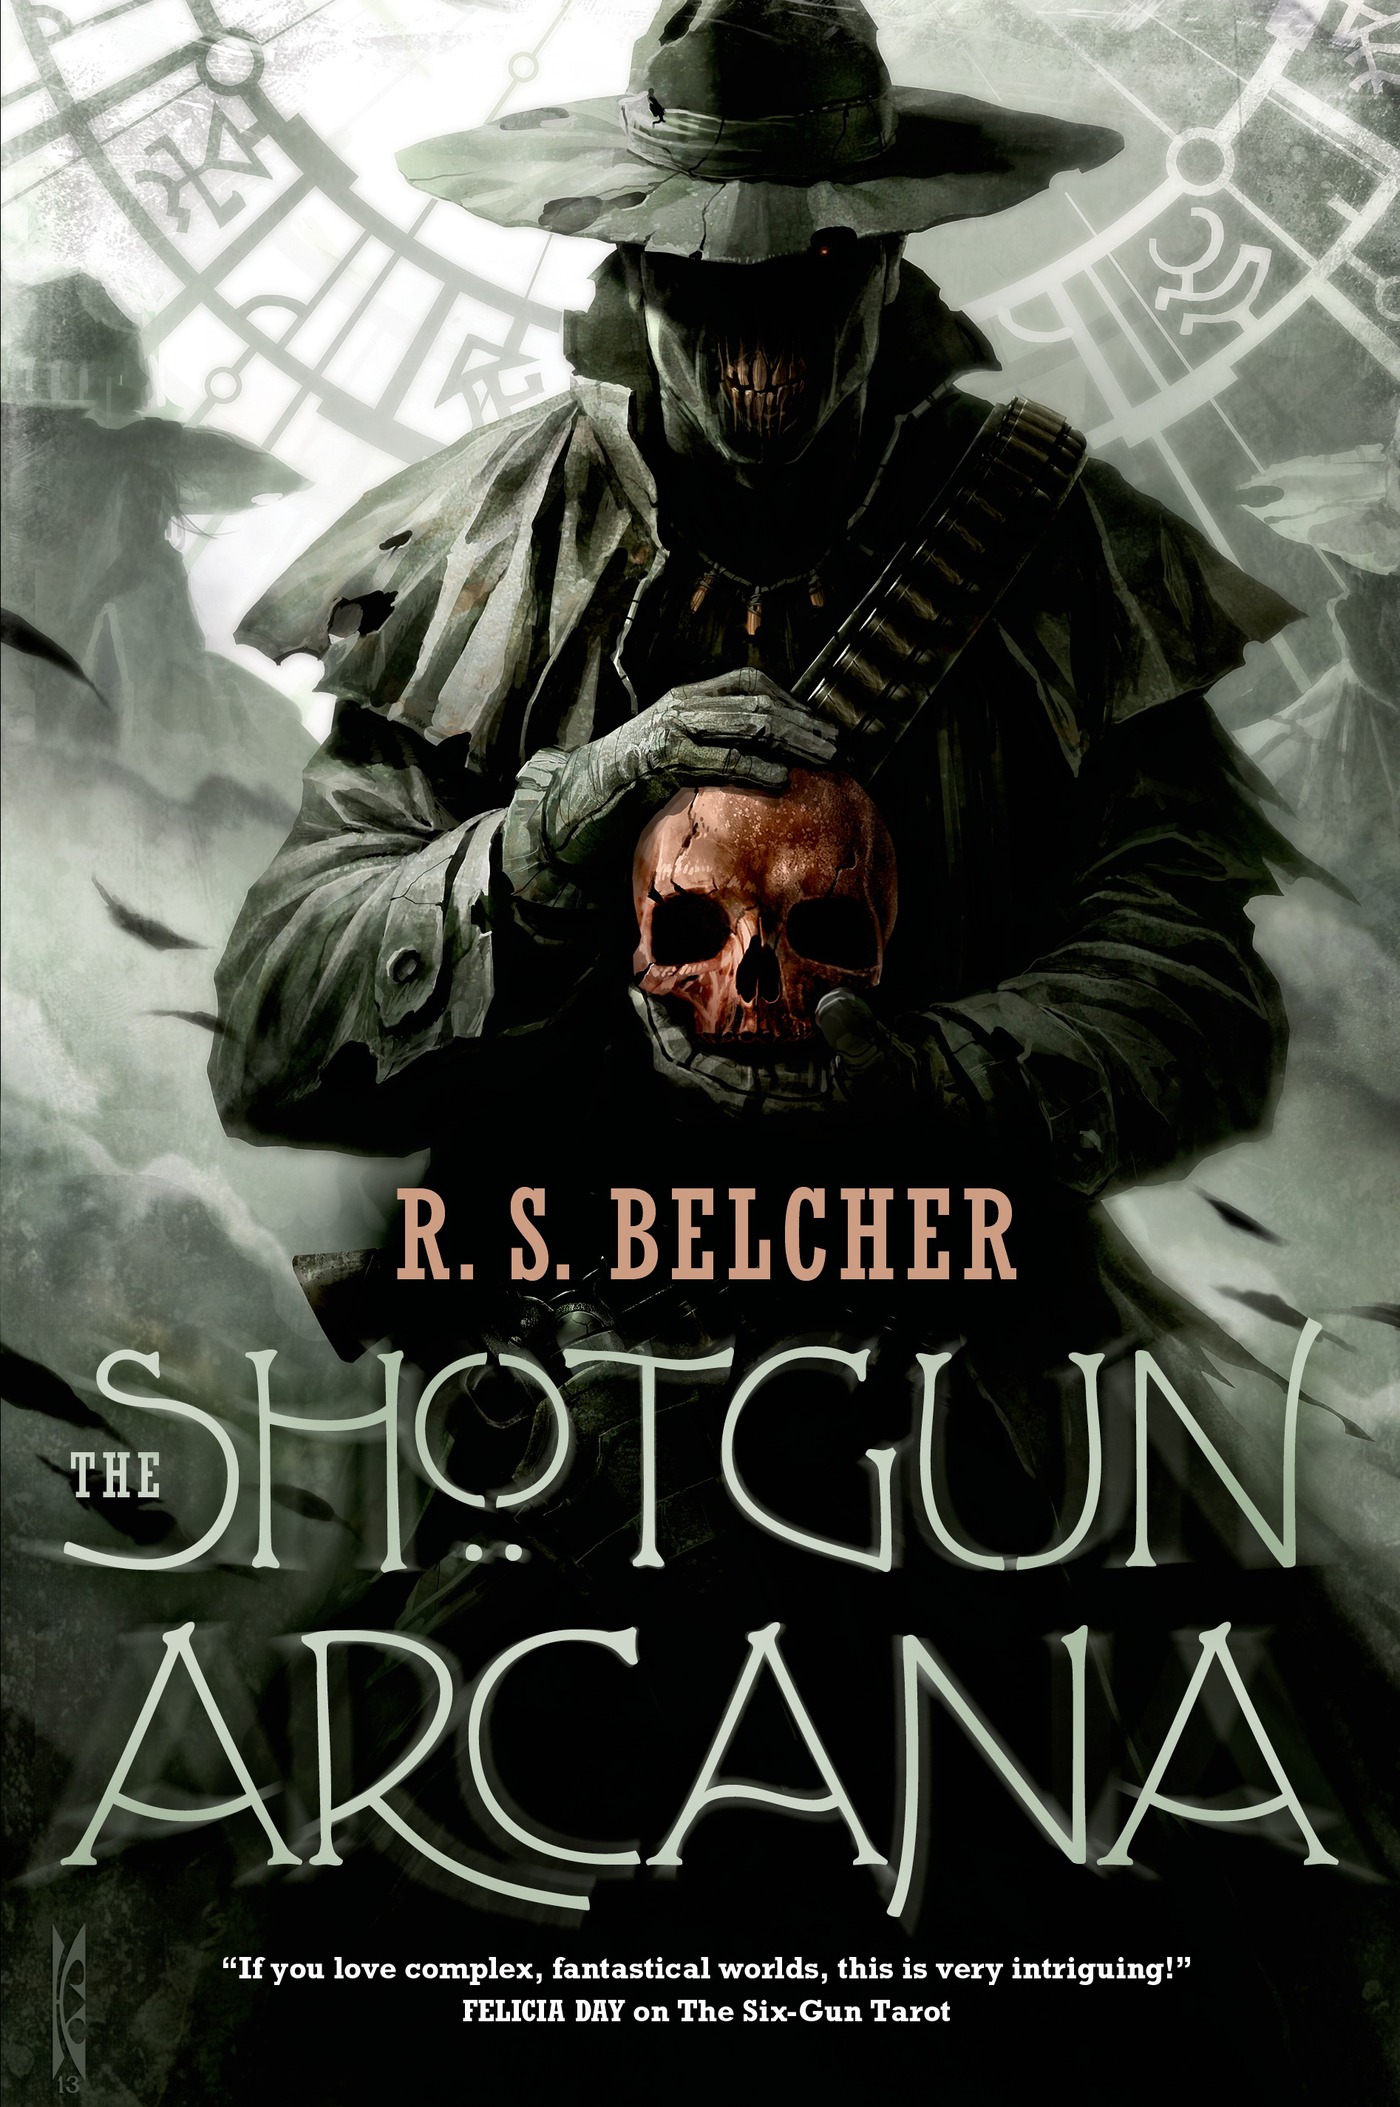 The Shotgun Arcana by R. S. Belcher